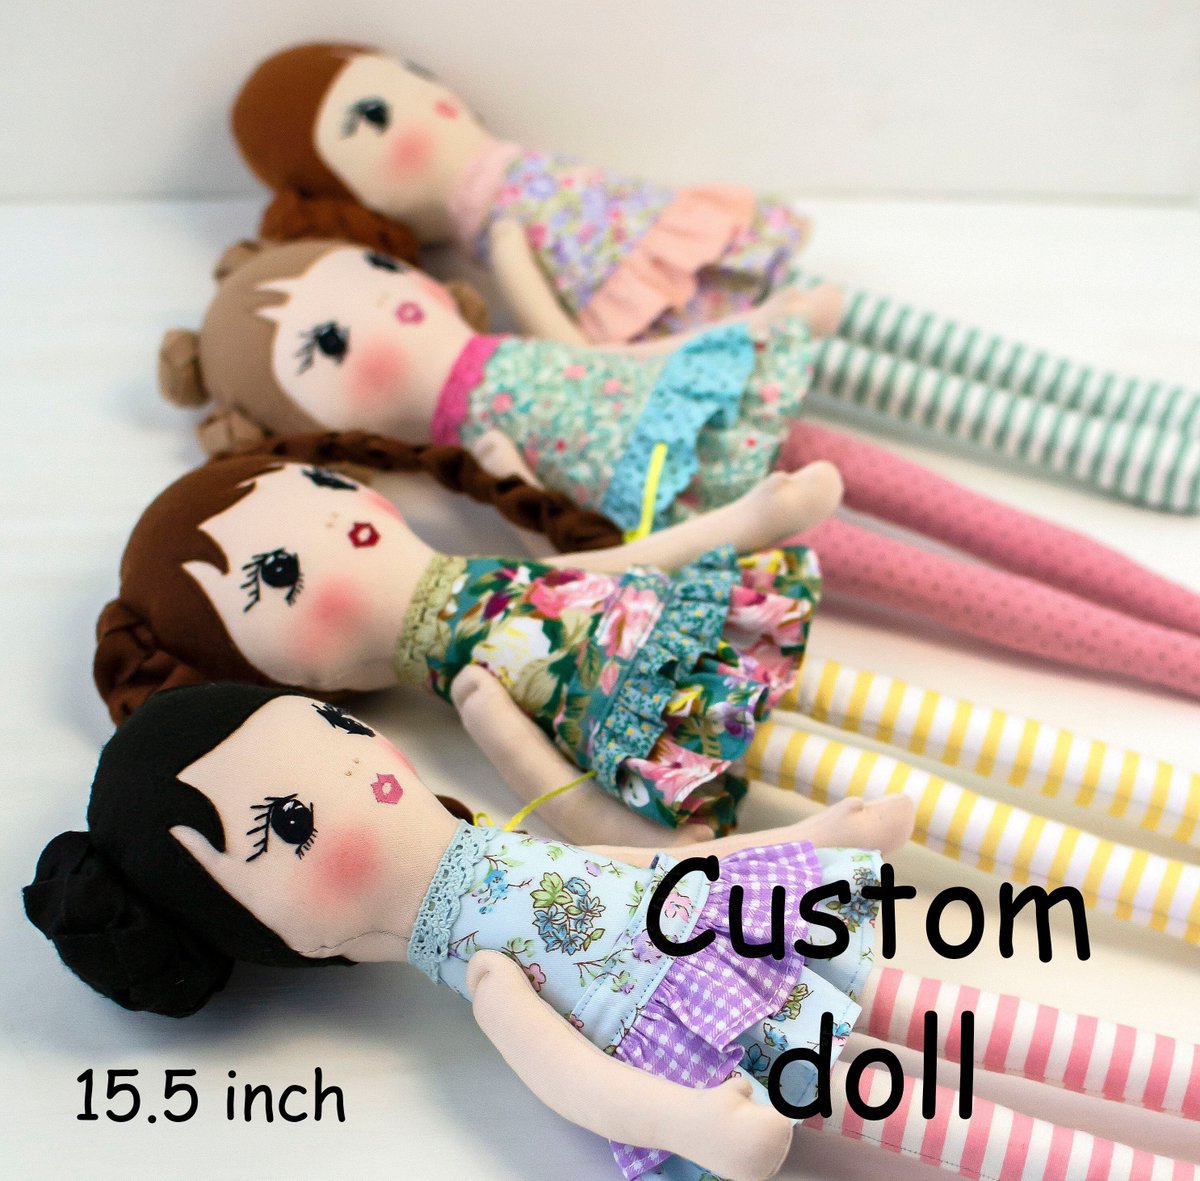 Custom rag doll Handmade fabric doll Personalized cloth doll etsy.me/3JbaUzt #rainbow #birthday #customdoll #handmadedoll #ragdoll #clothdoll #fabricdoll #personalizeddoll #babydoll